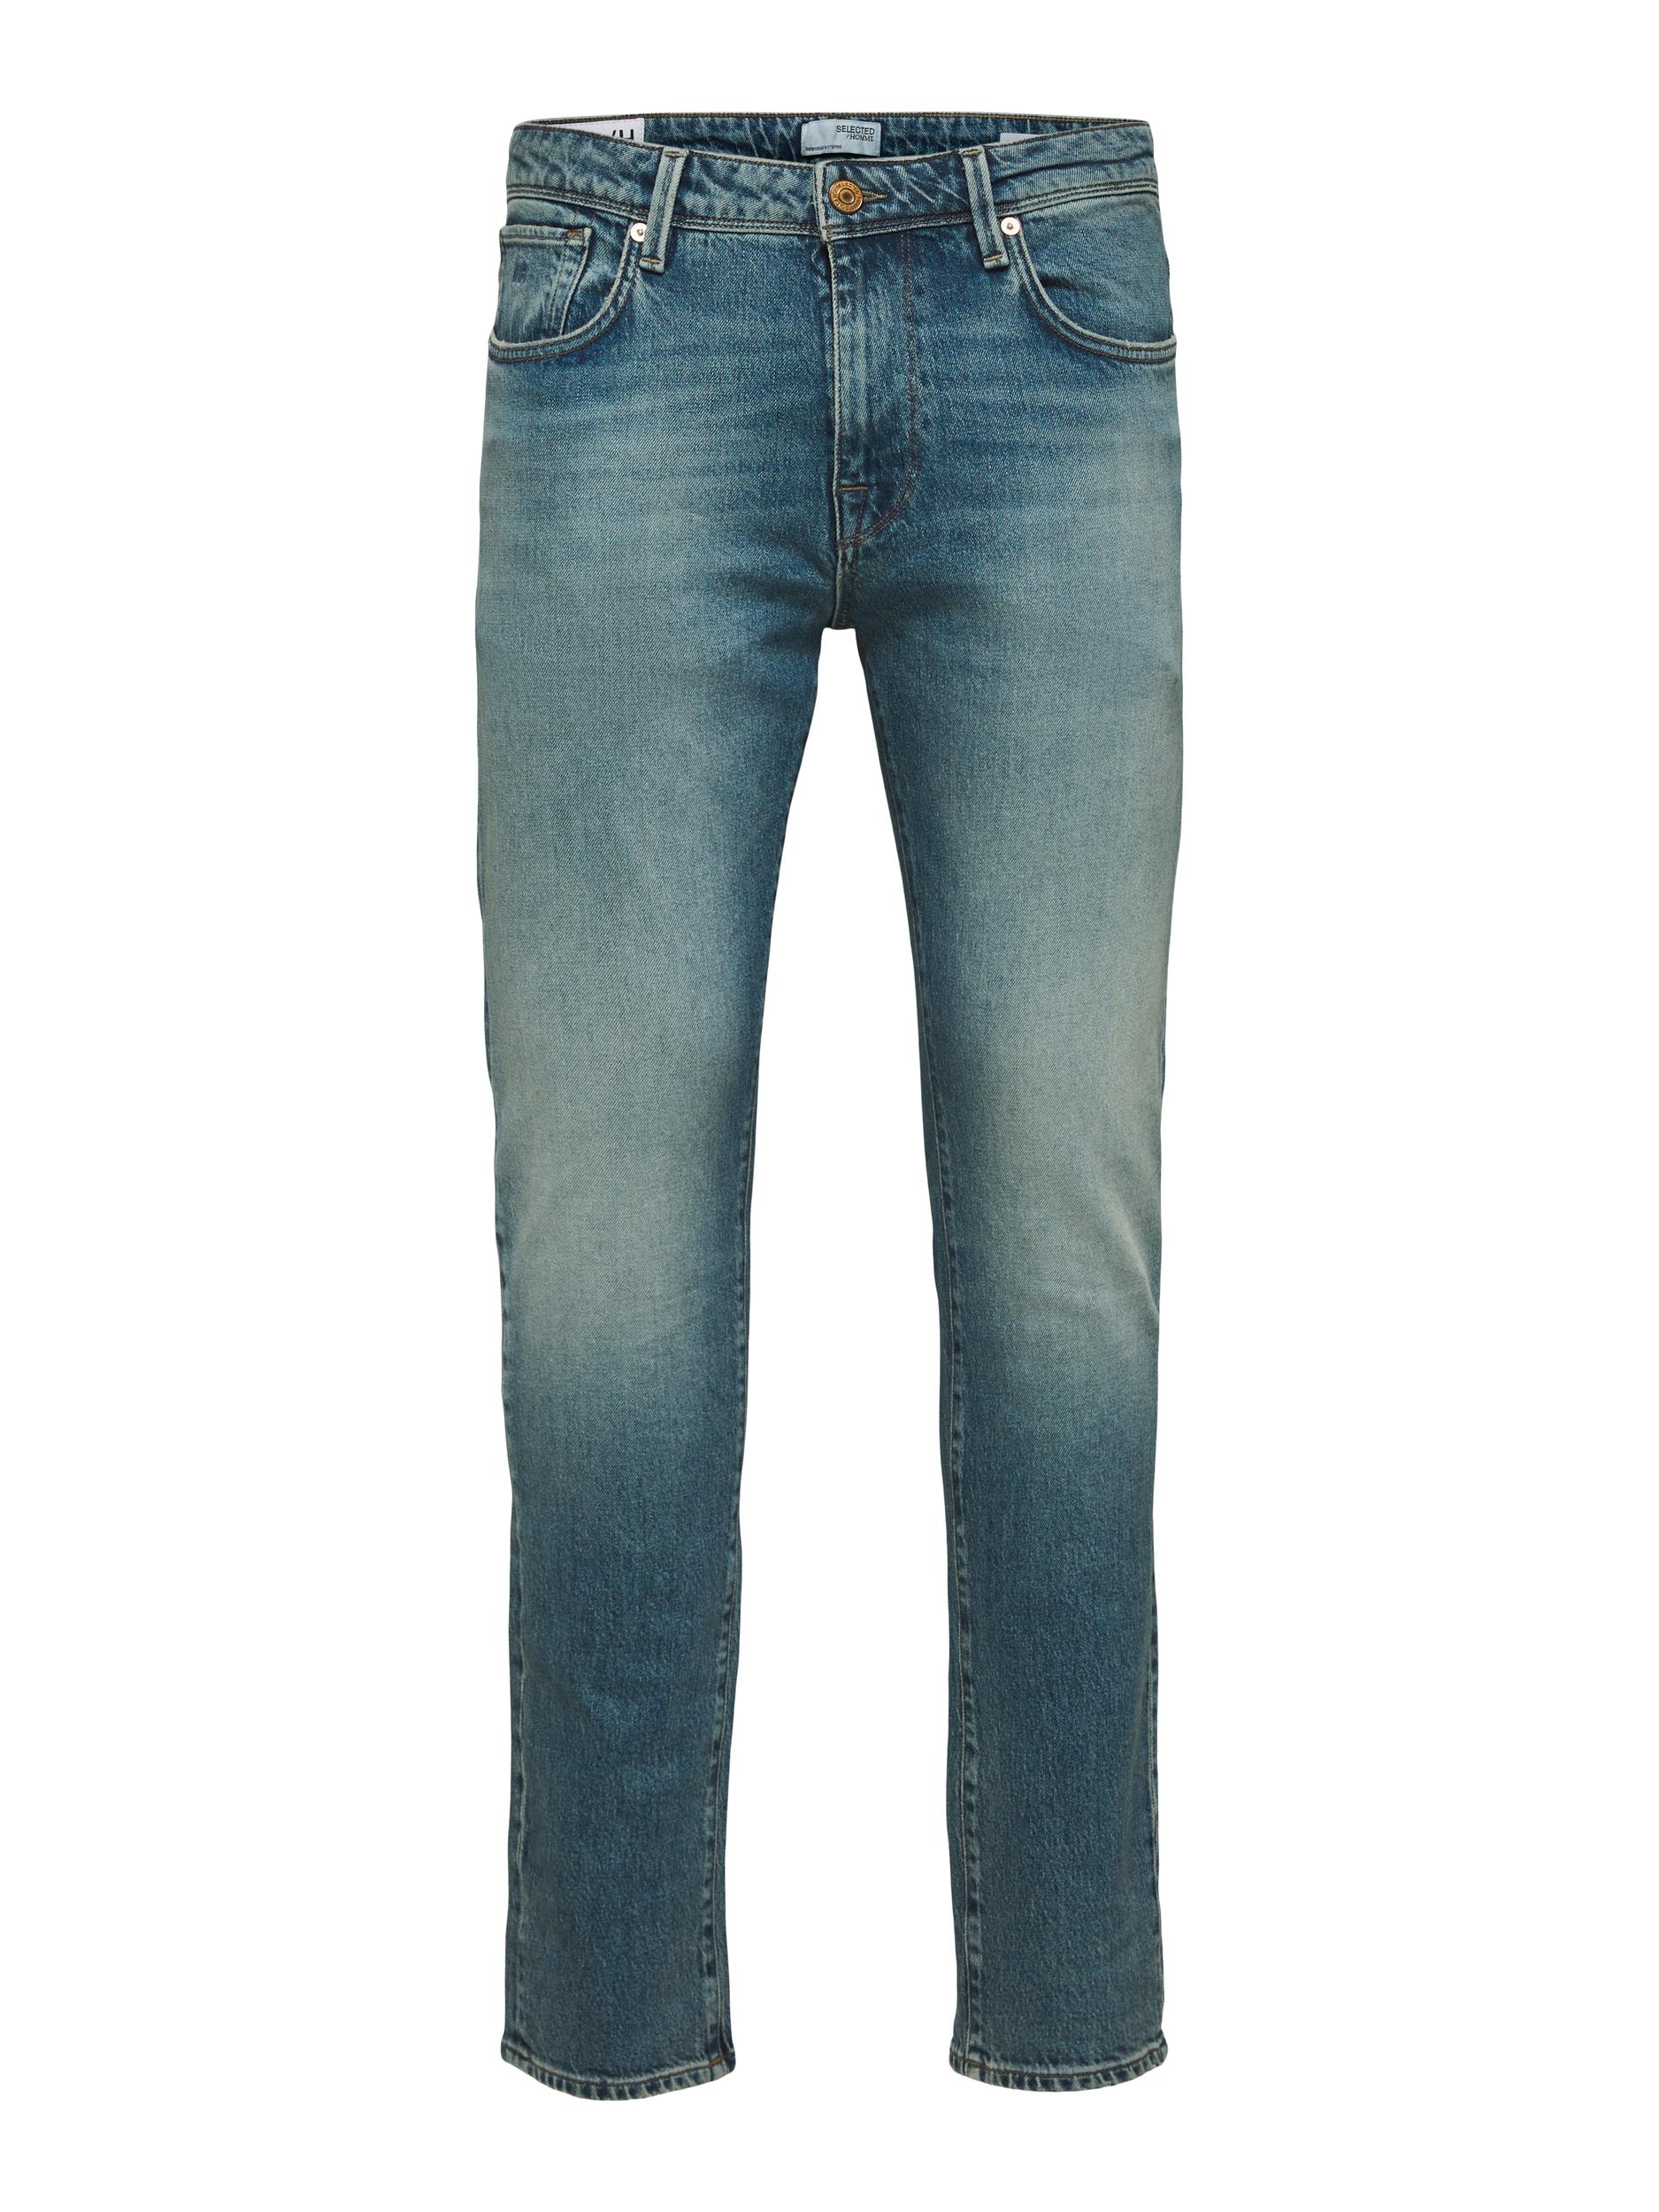 Slim-Leon Jeans, Light Blue Denim, W36/L34